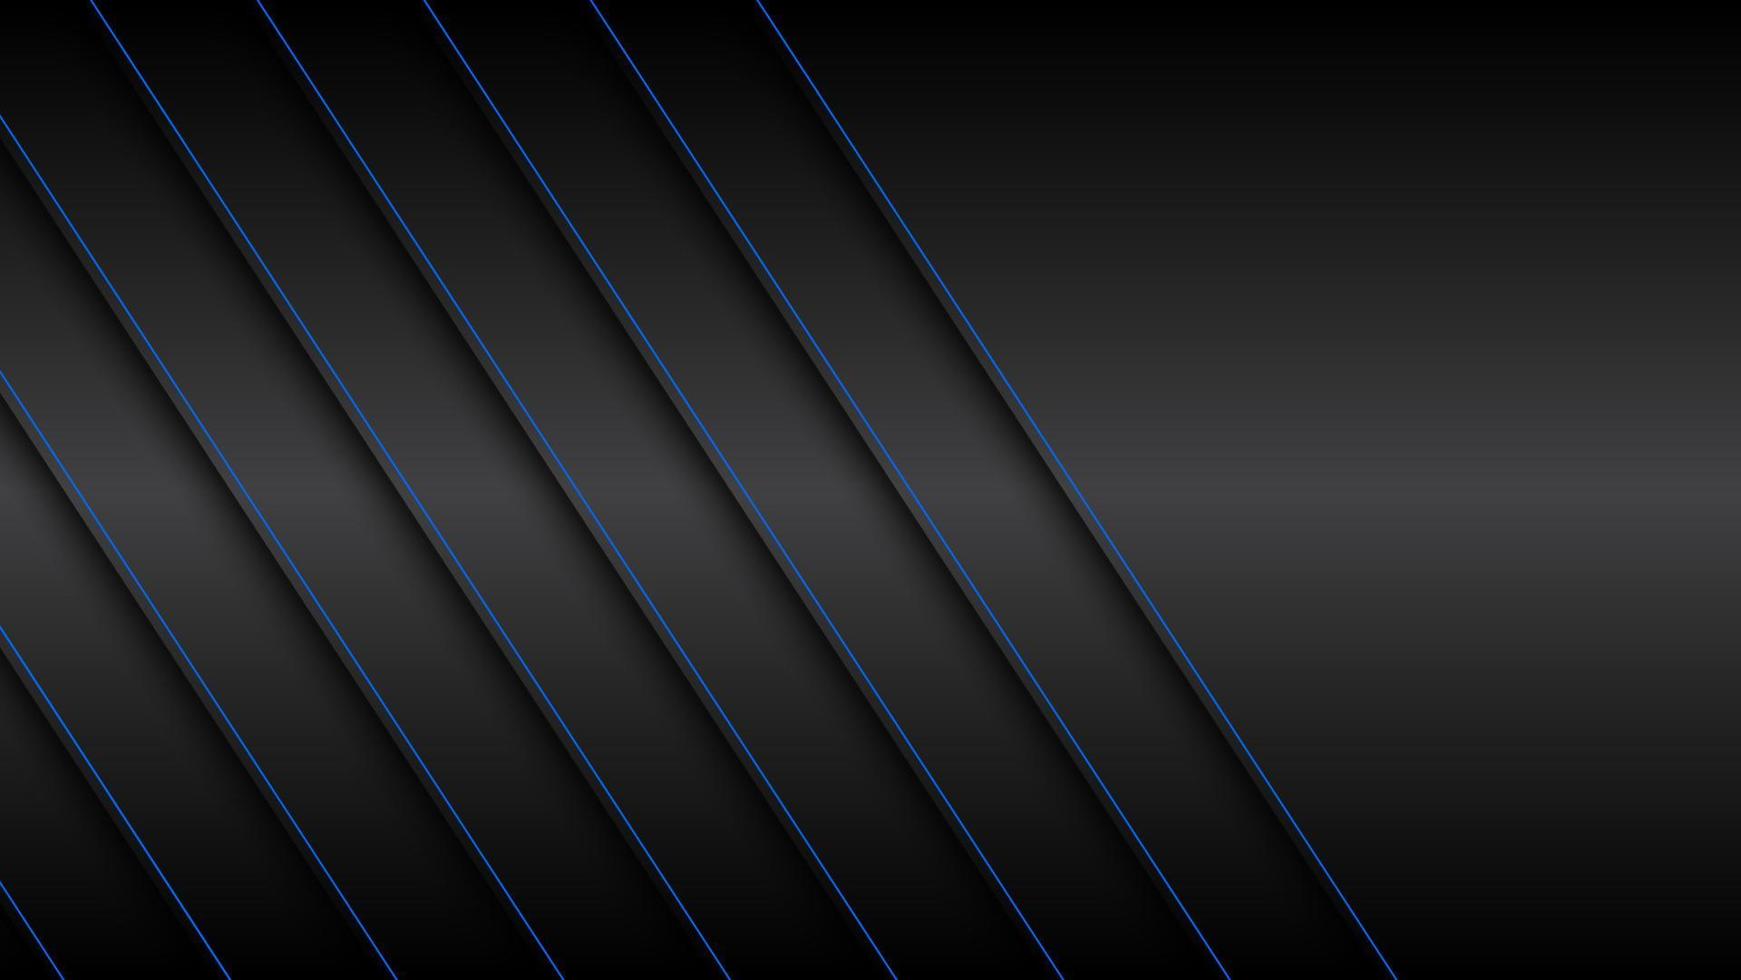 schwarzer und blauer Materialdesignhintergrund mit blauen diagonalen Linien, moderne abstrakte Widescreen-Vektorillustration vektor